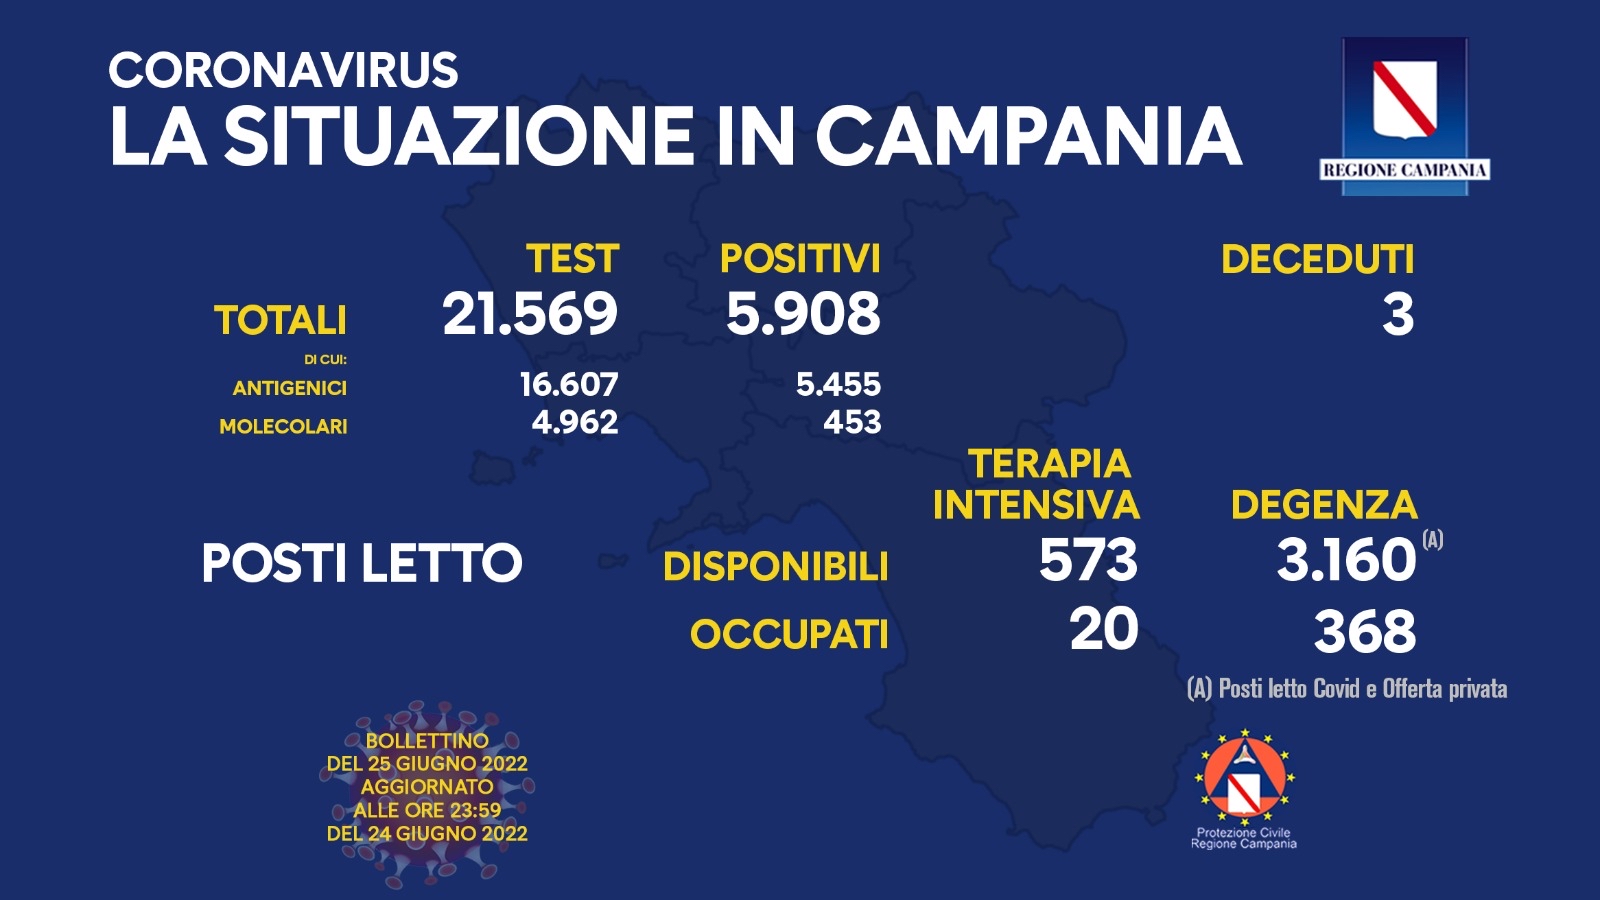 Regione Campania: Coronavirus, Unità di Crisi, Bollettino, 5.908 casi positivi, 3 decessi